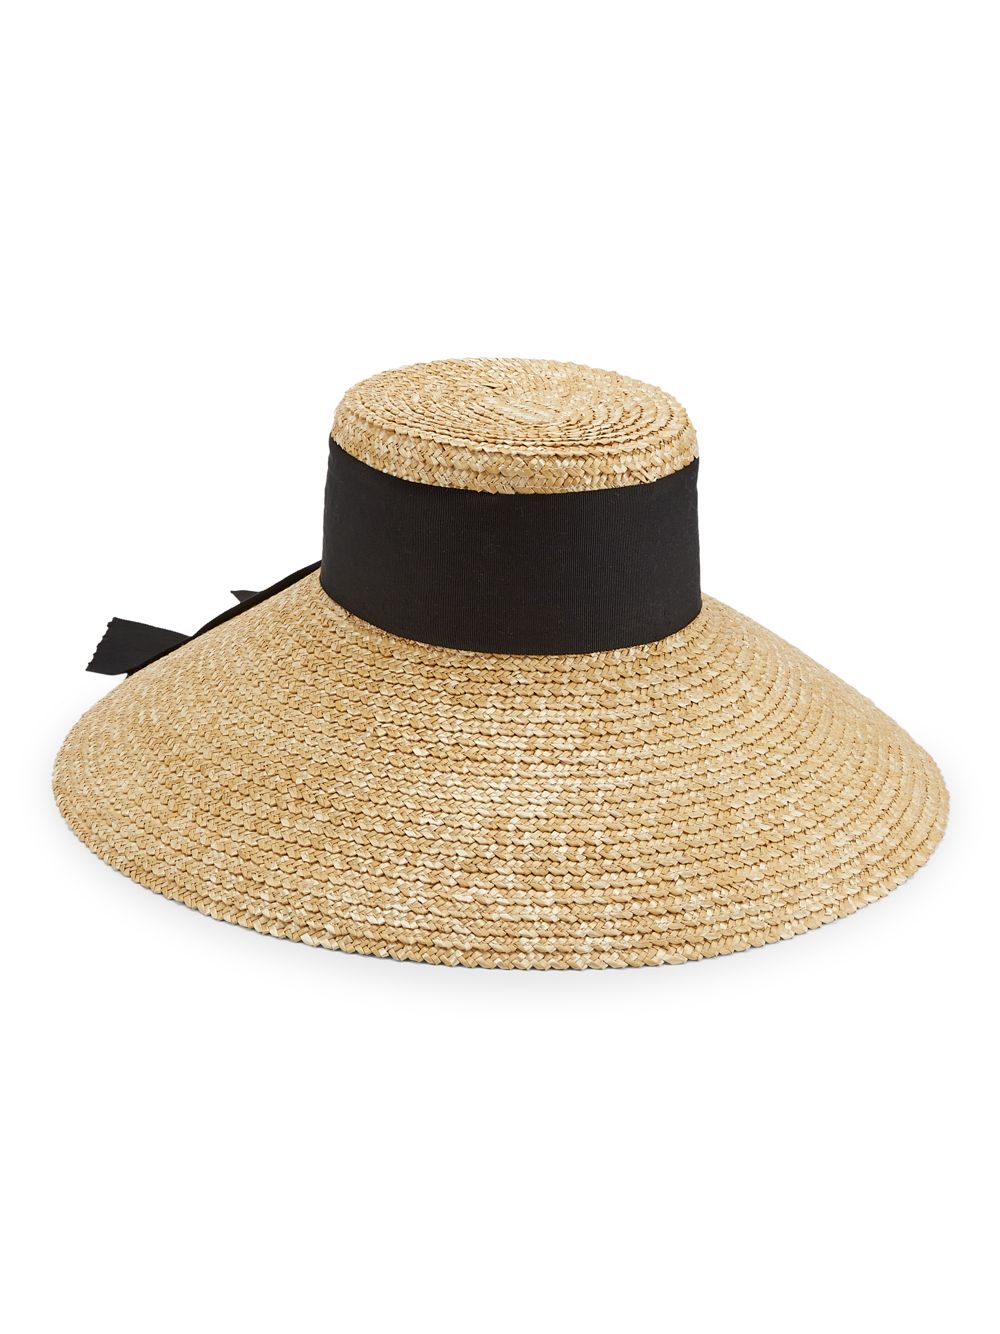 Соломенная шляпа от солнца Mirabel Eugenia Kim цена и фото